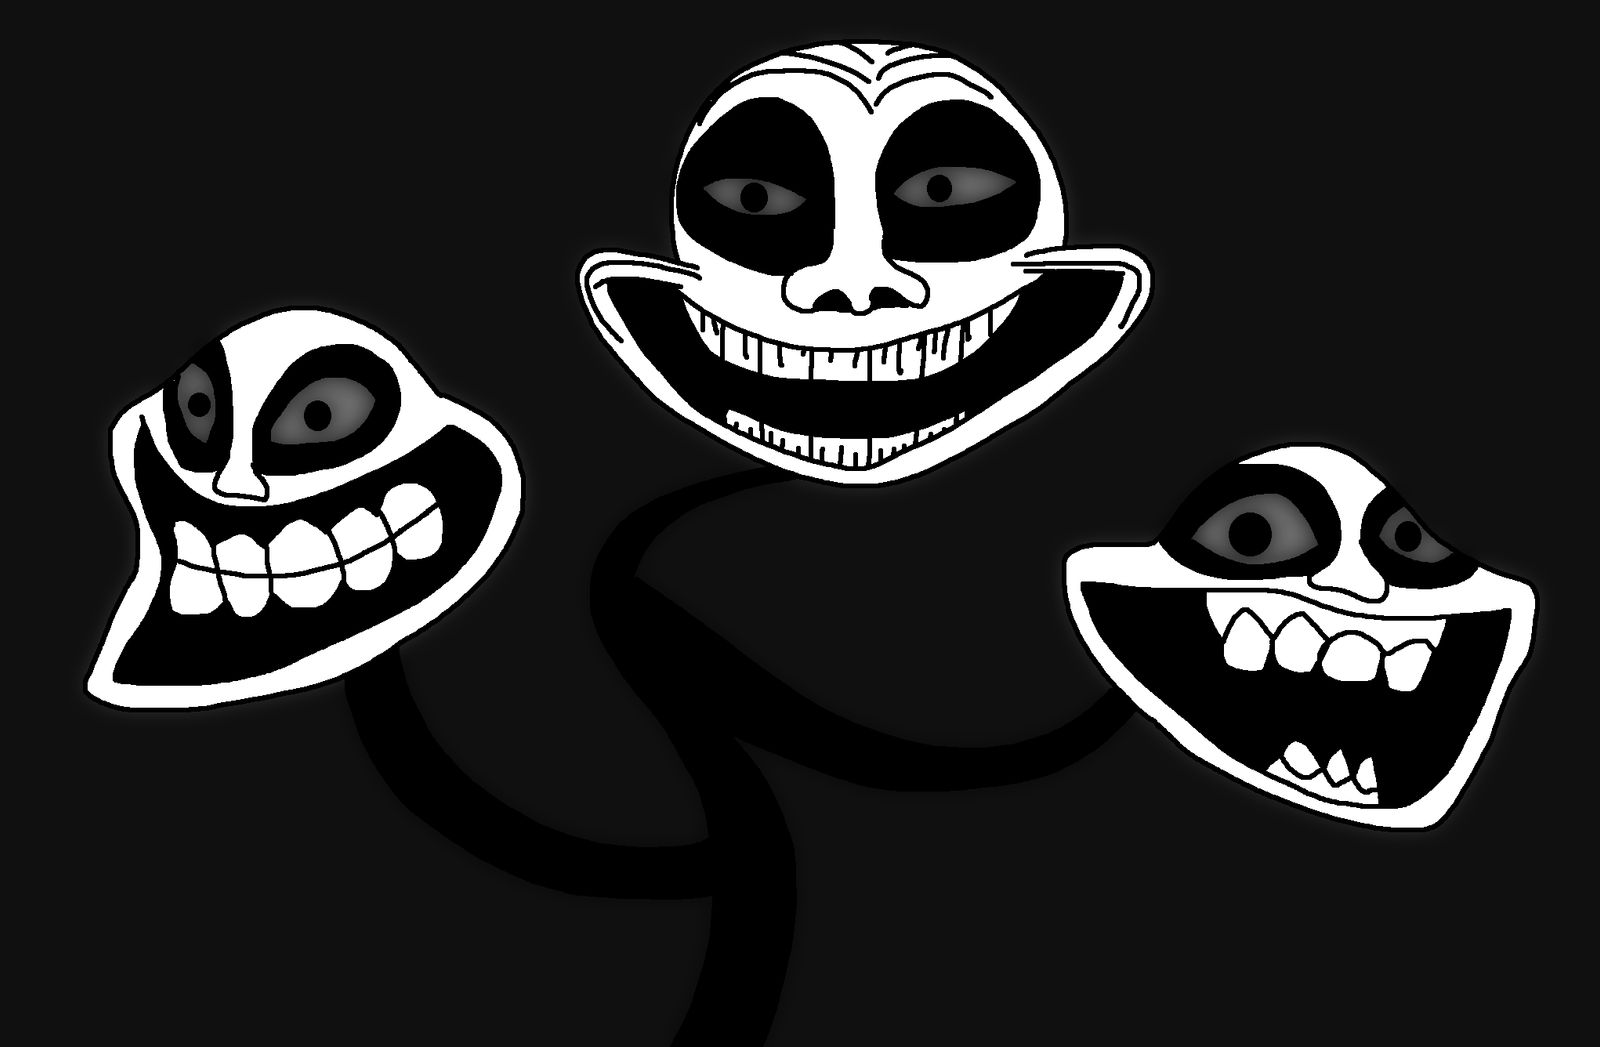 trollface is scary#creepytiktokvideos